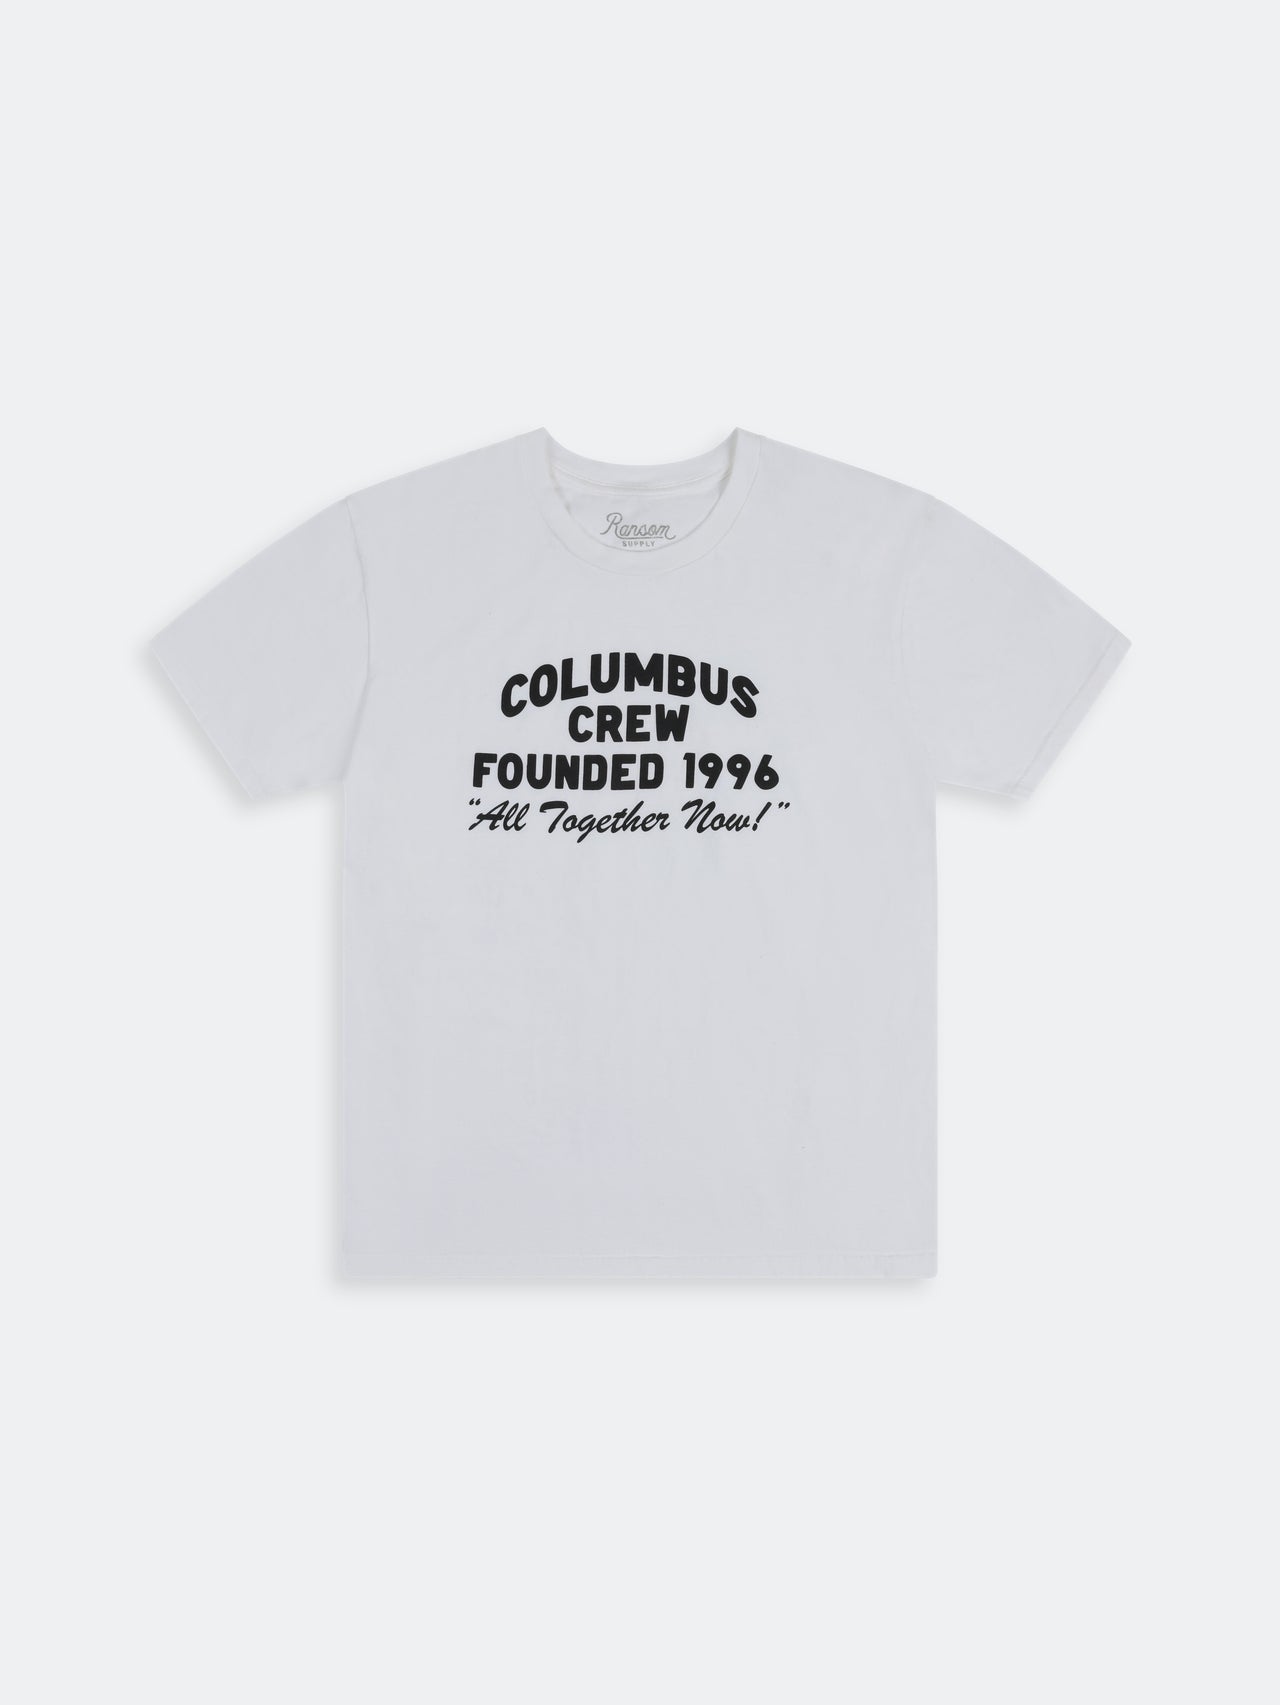 Columbus Crew Founded 1996 Tee - White